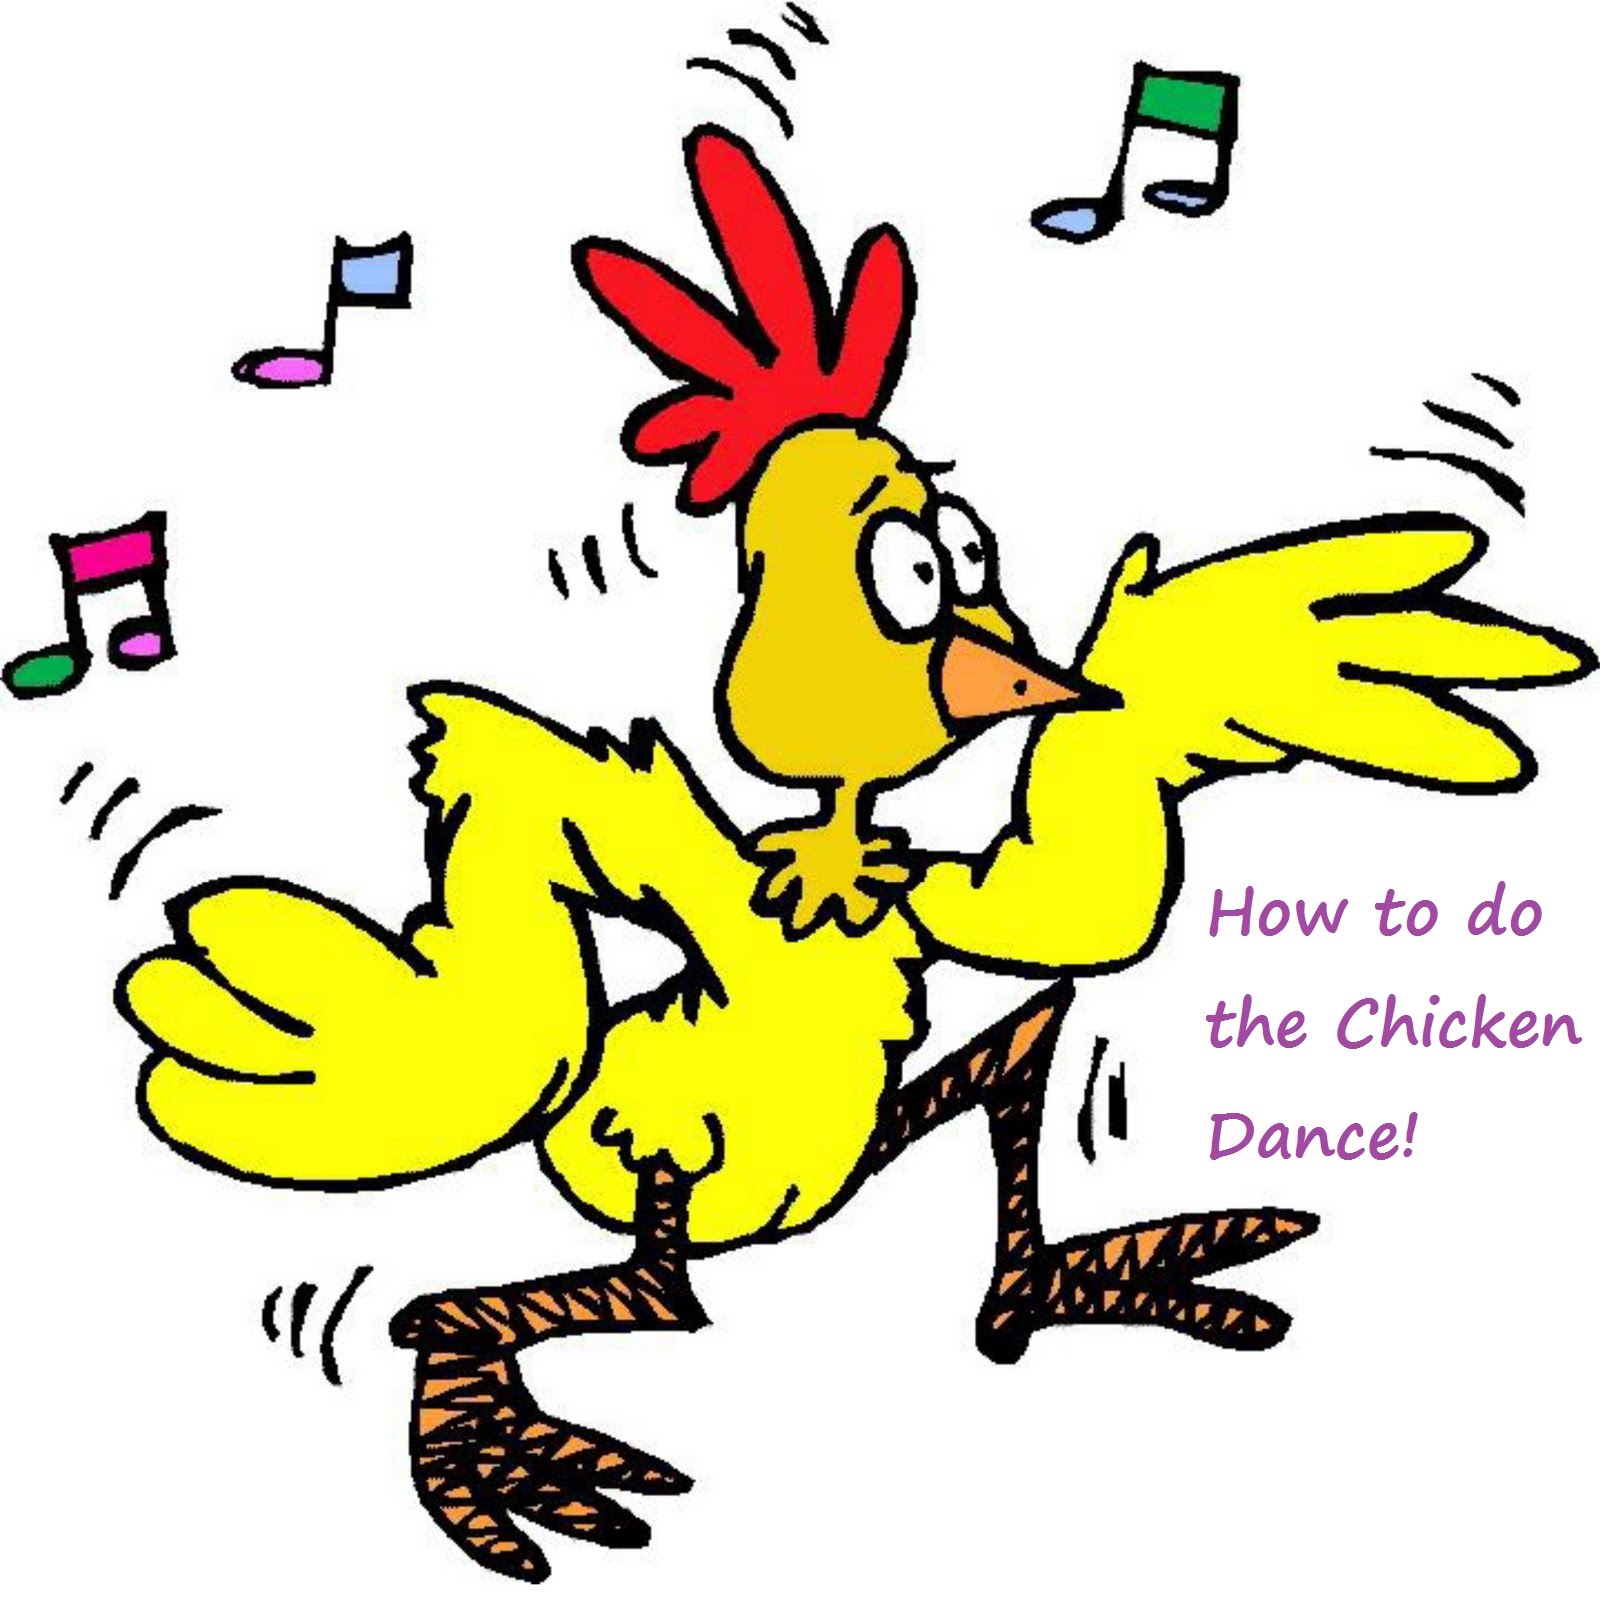 Chicken dance photo